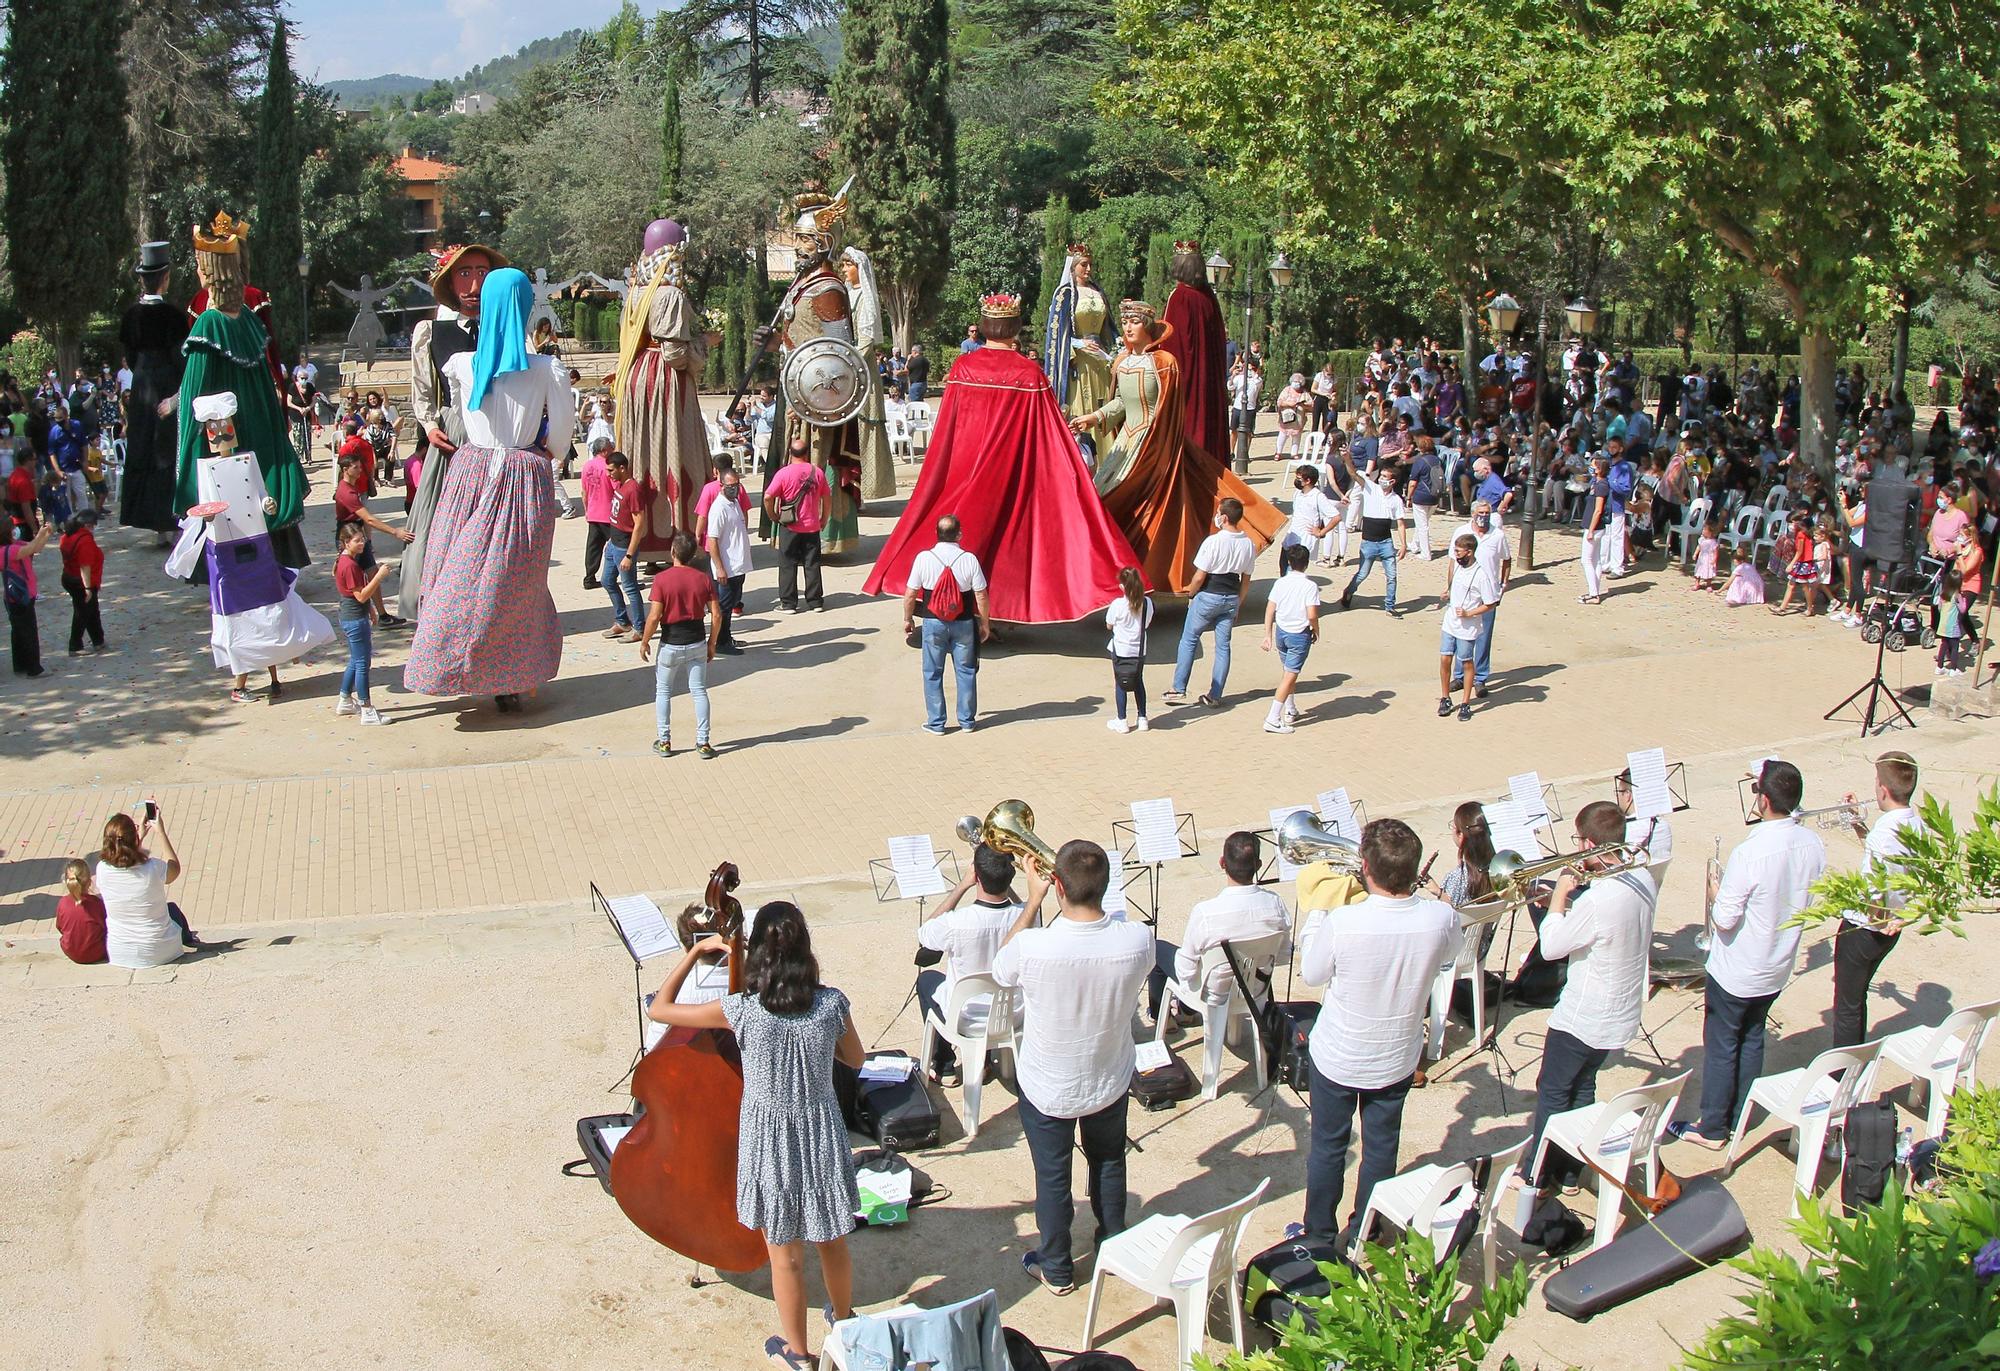 Festa dels 40 anys del gegants reis a Sallent